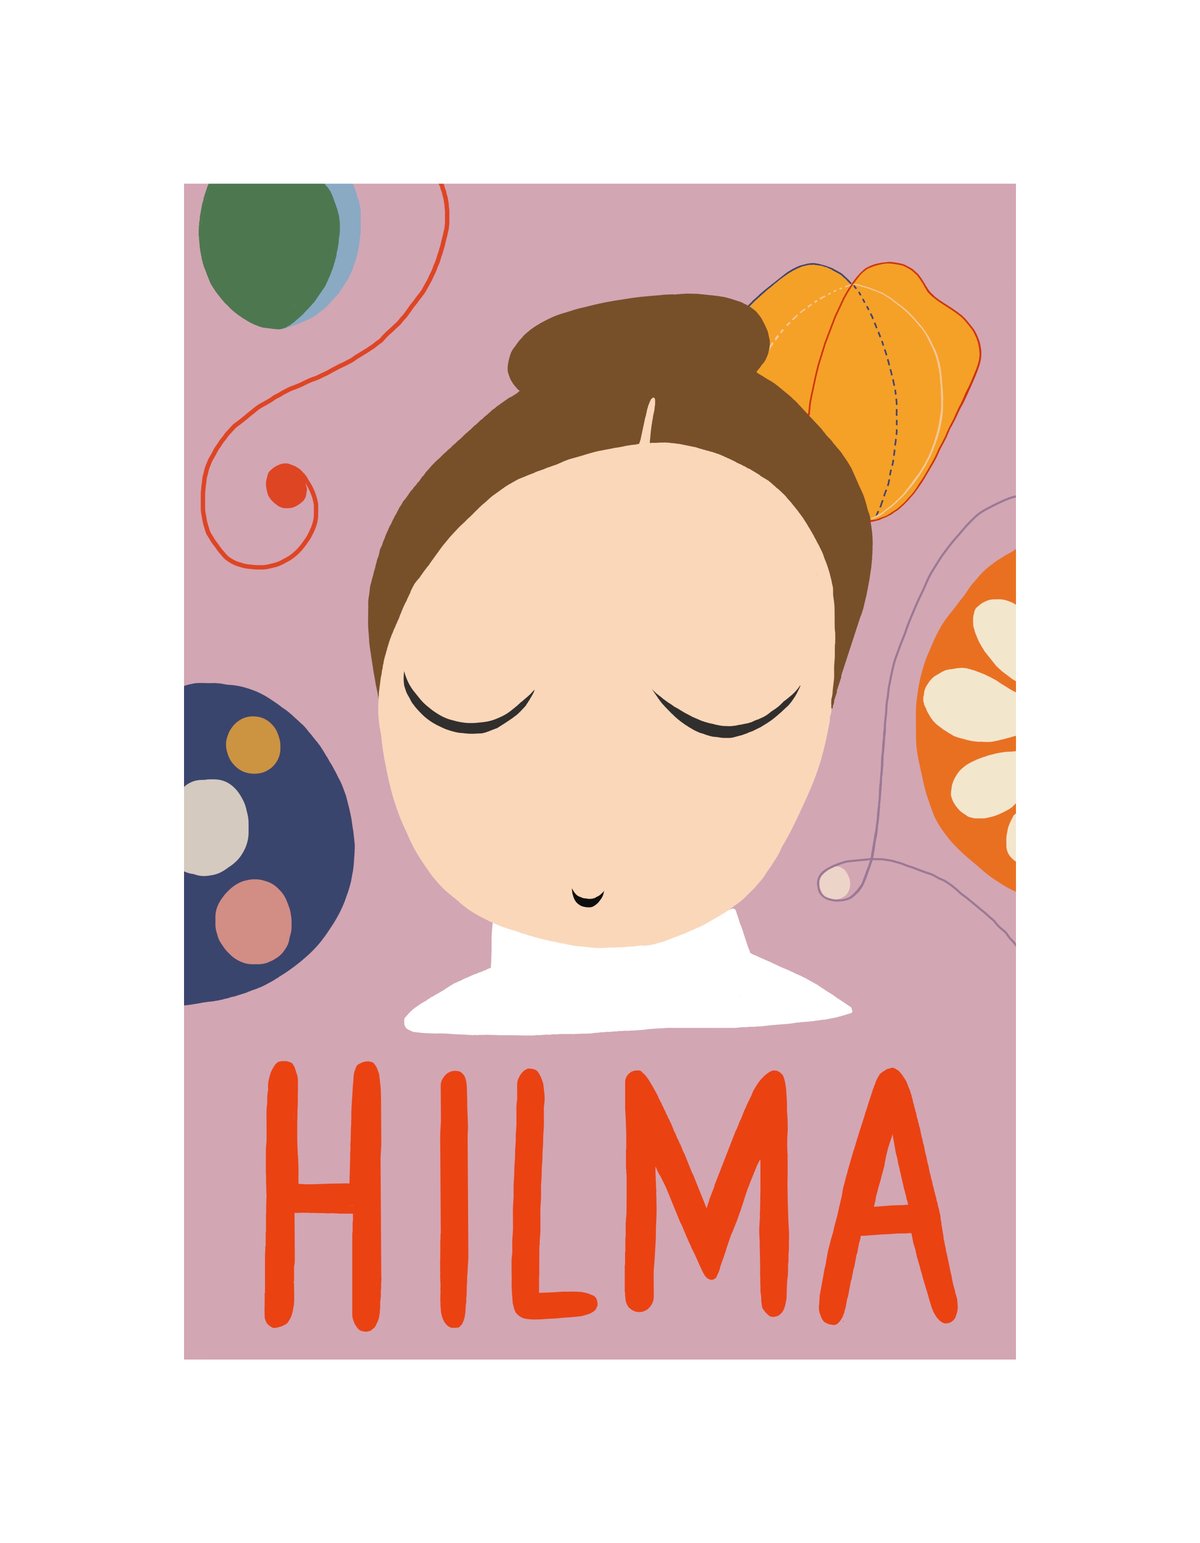 Image of HILMA 